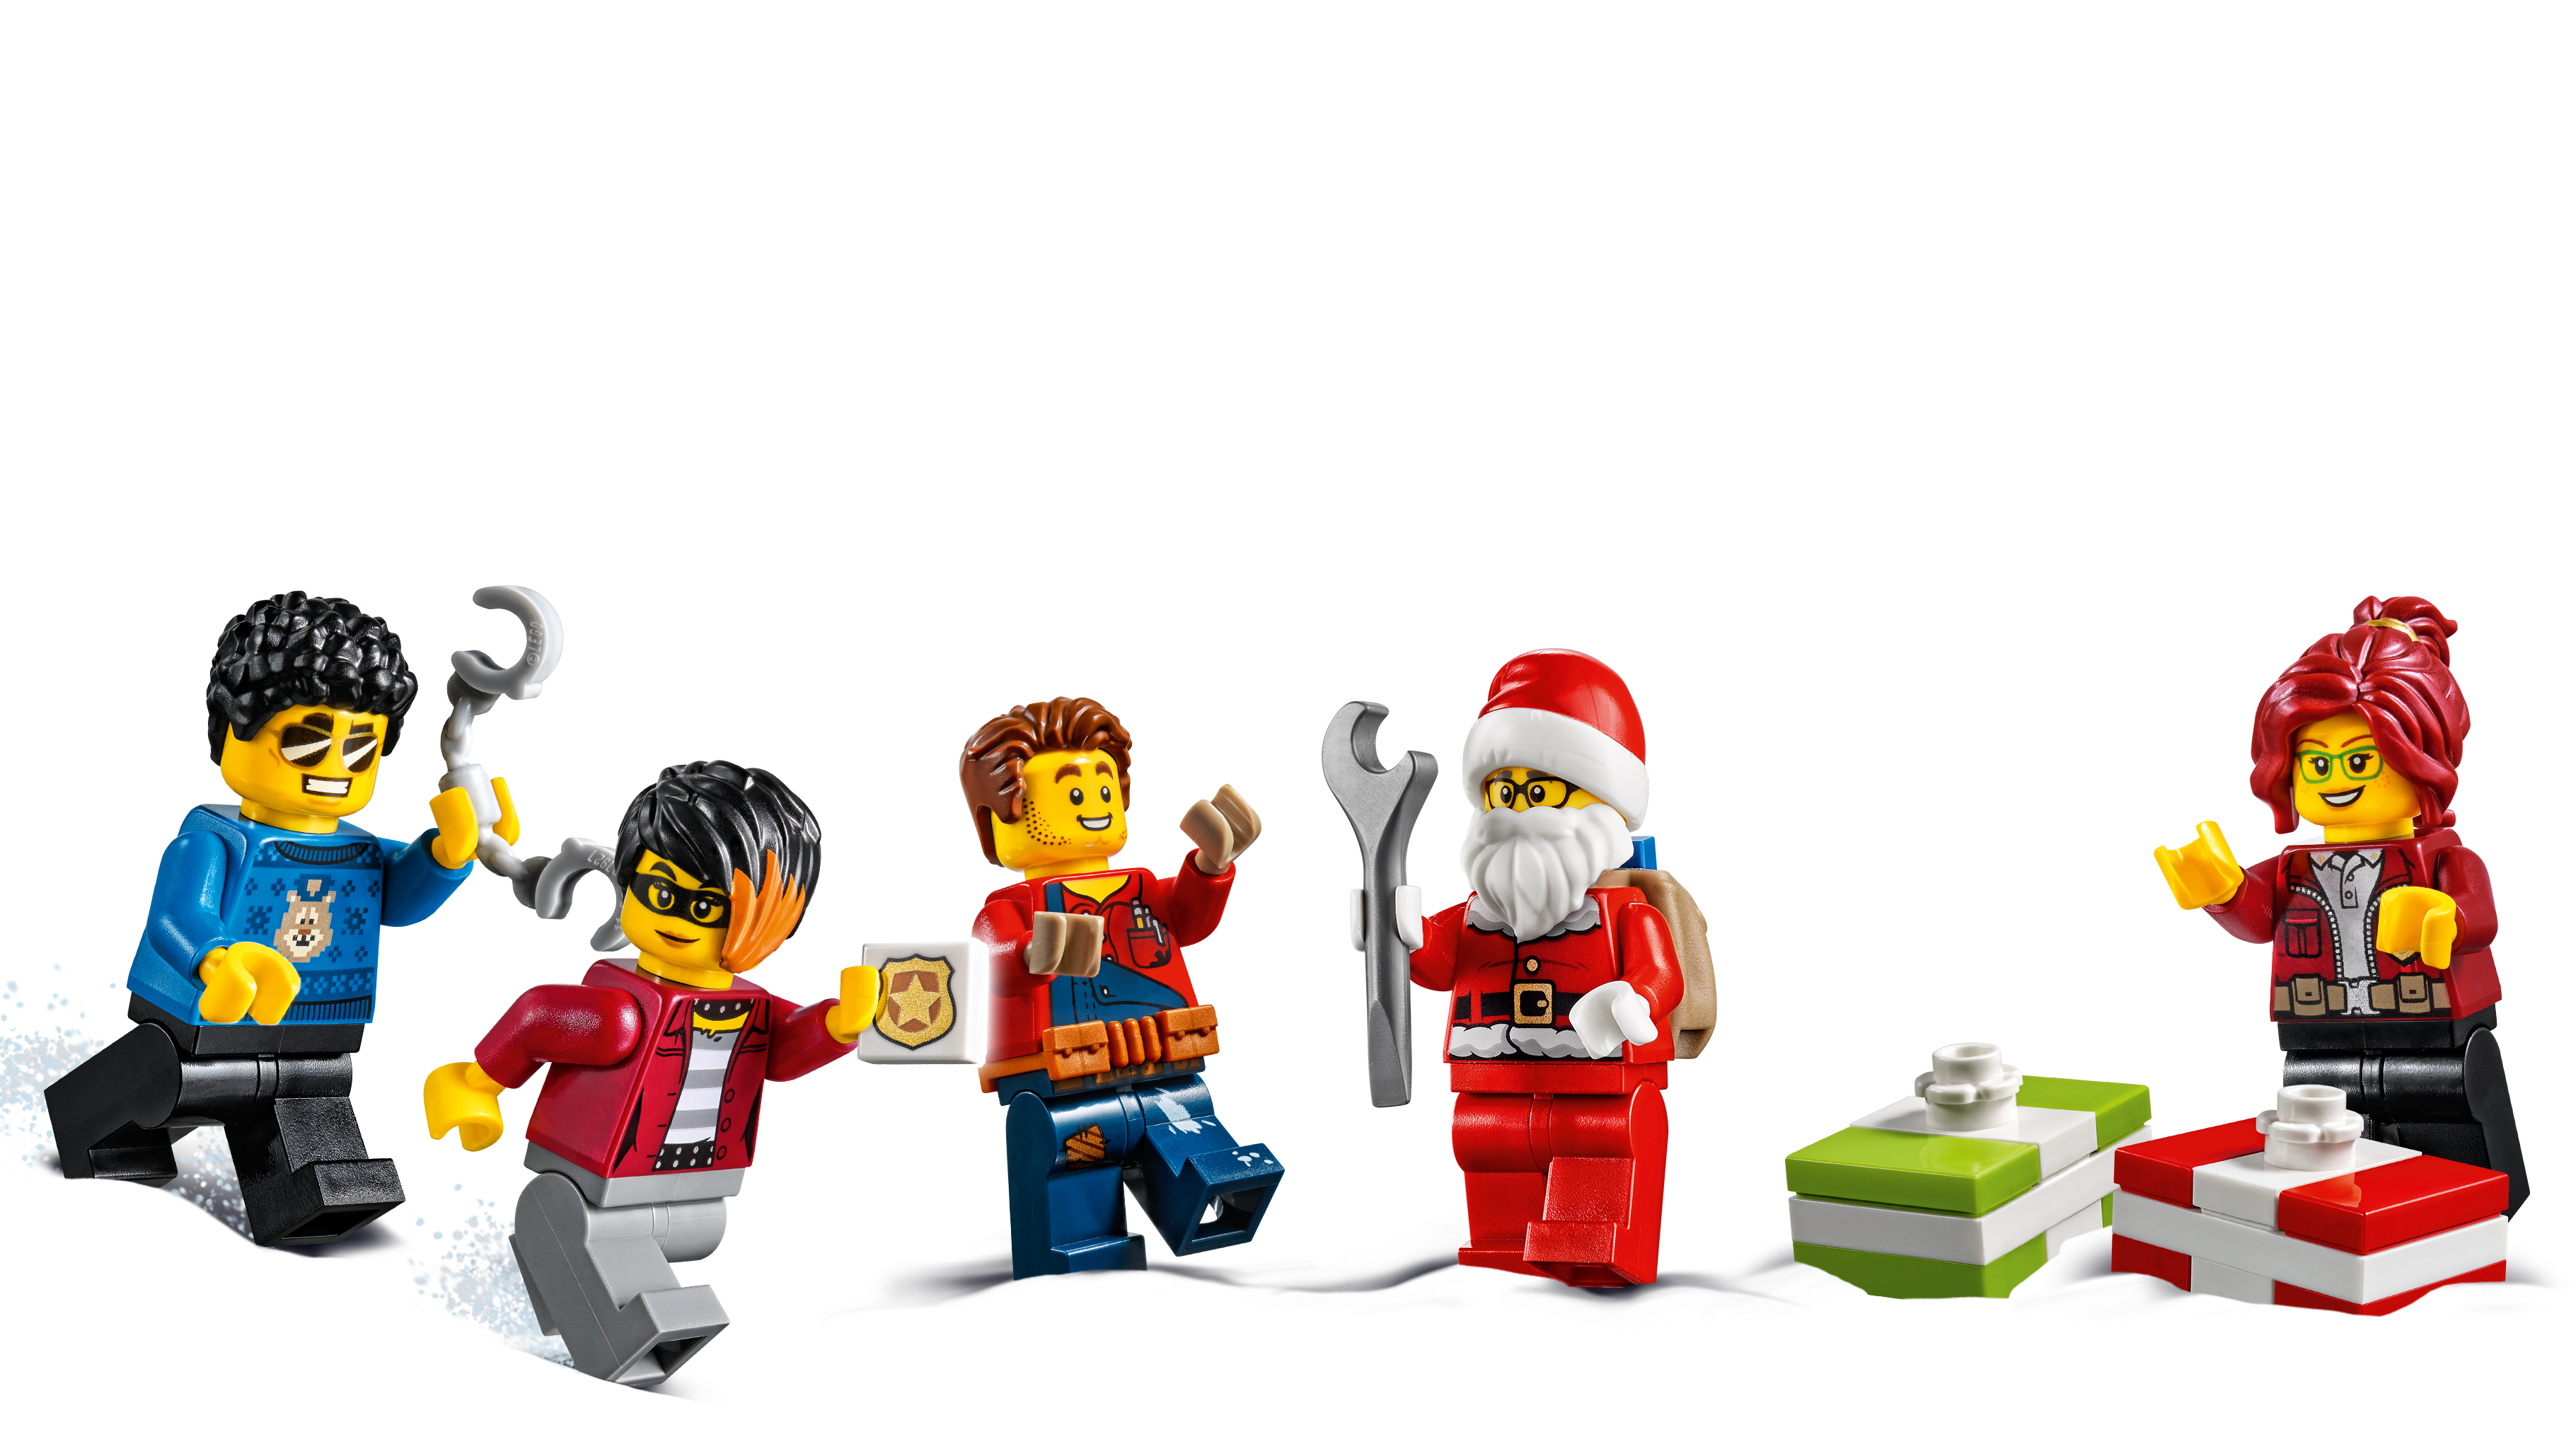 60268 Lego City Advent Calendar 